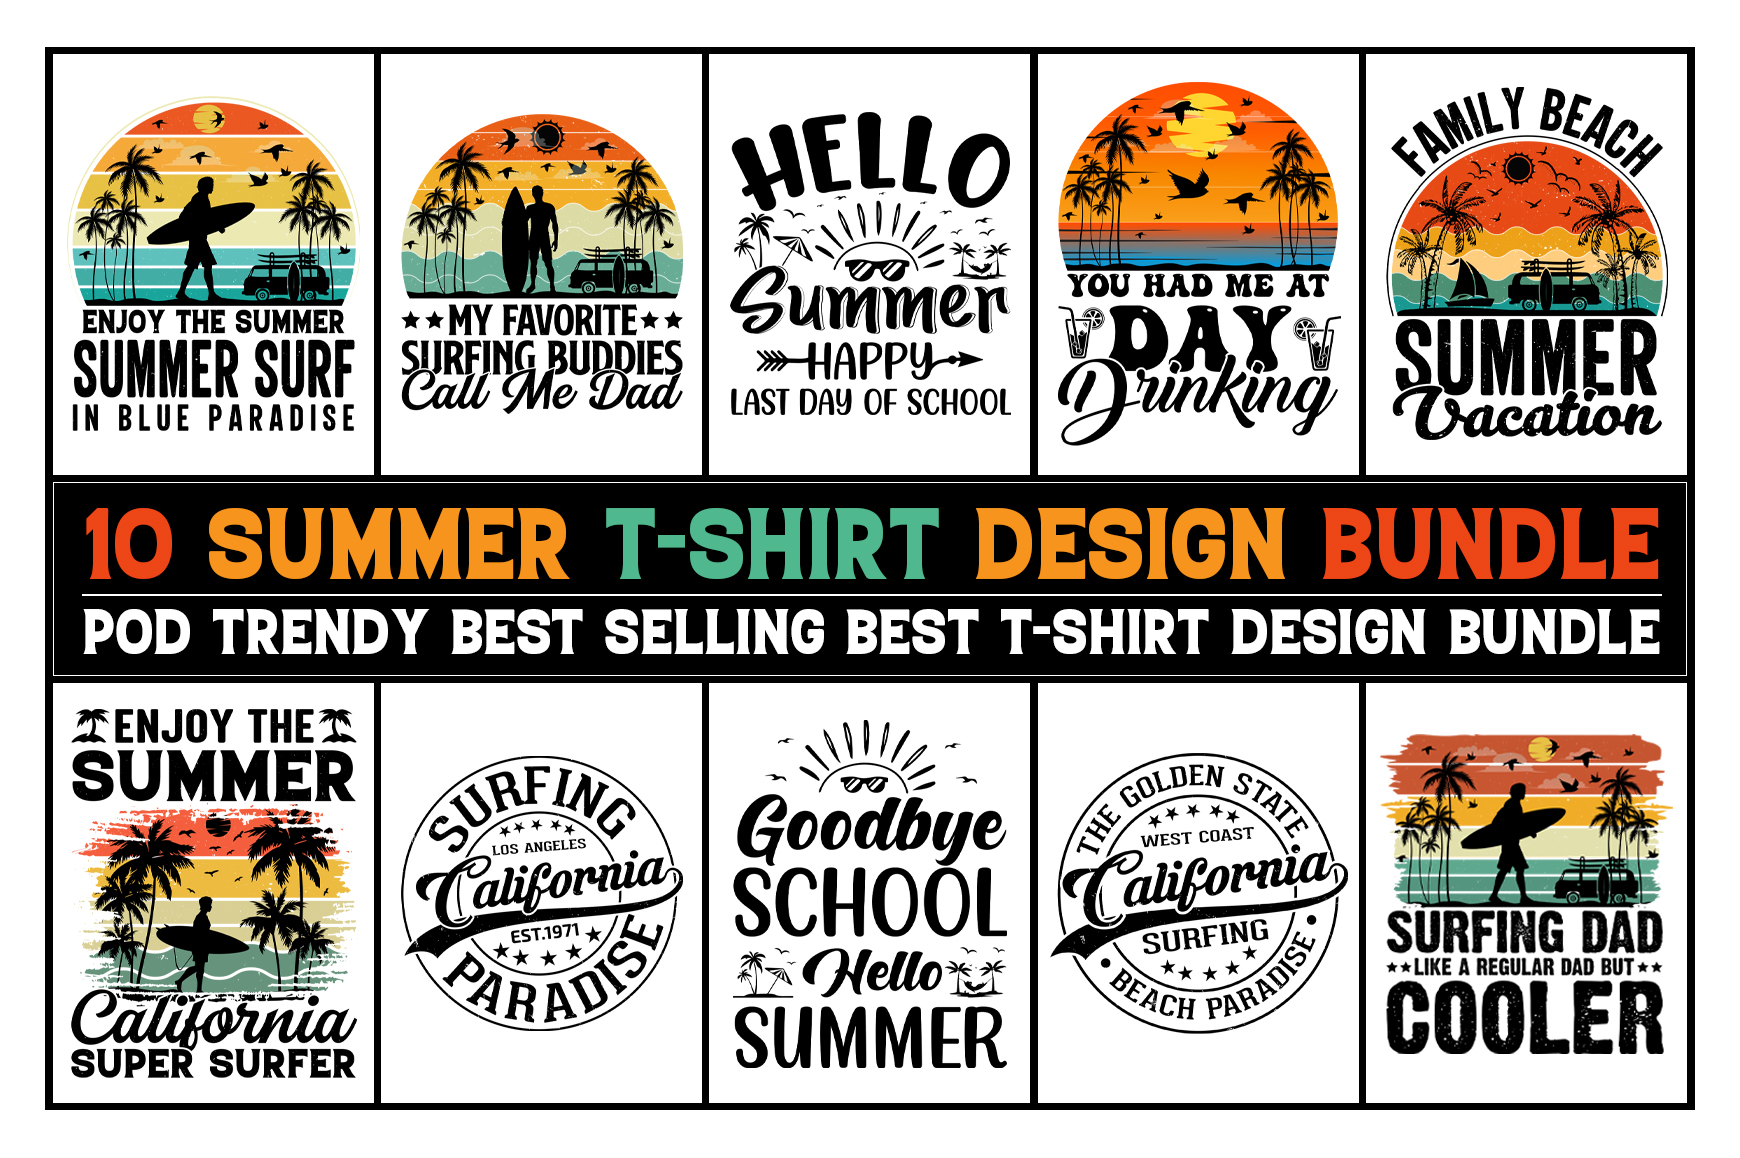 Enjoy the summer t-shirt design. Summer t-shirt design vector. For